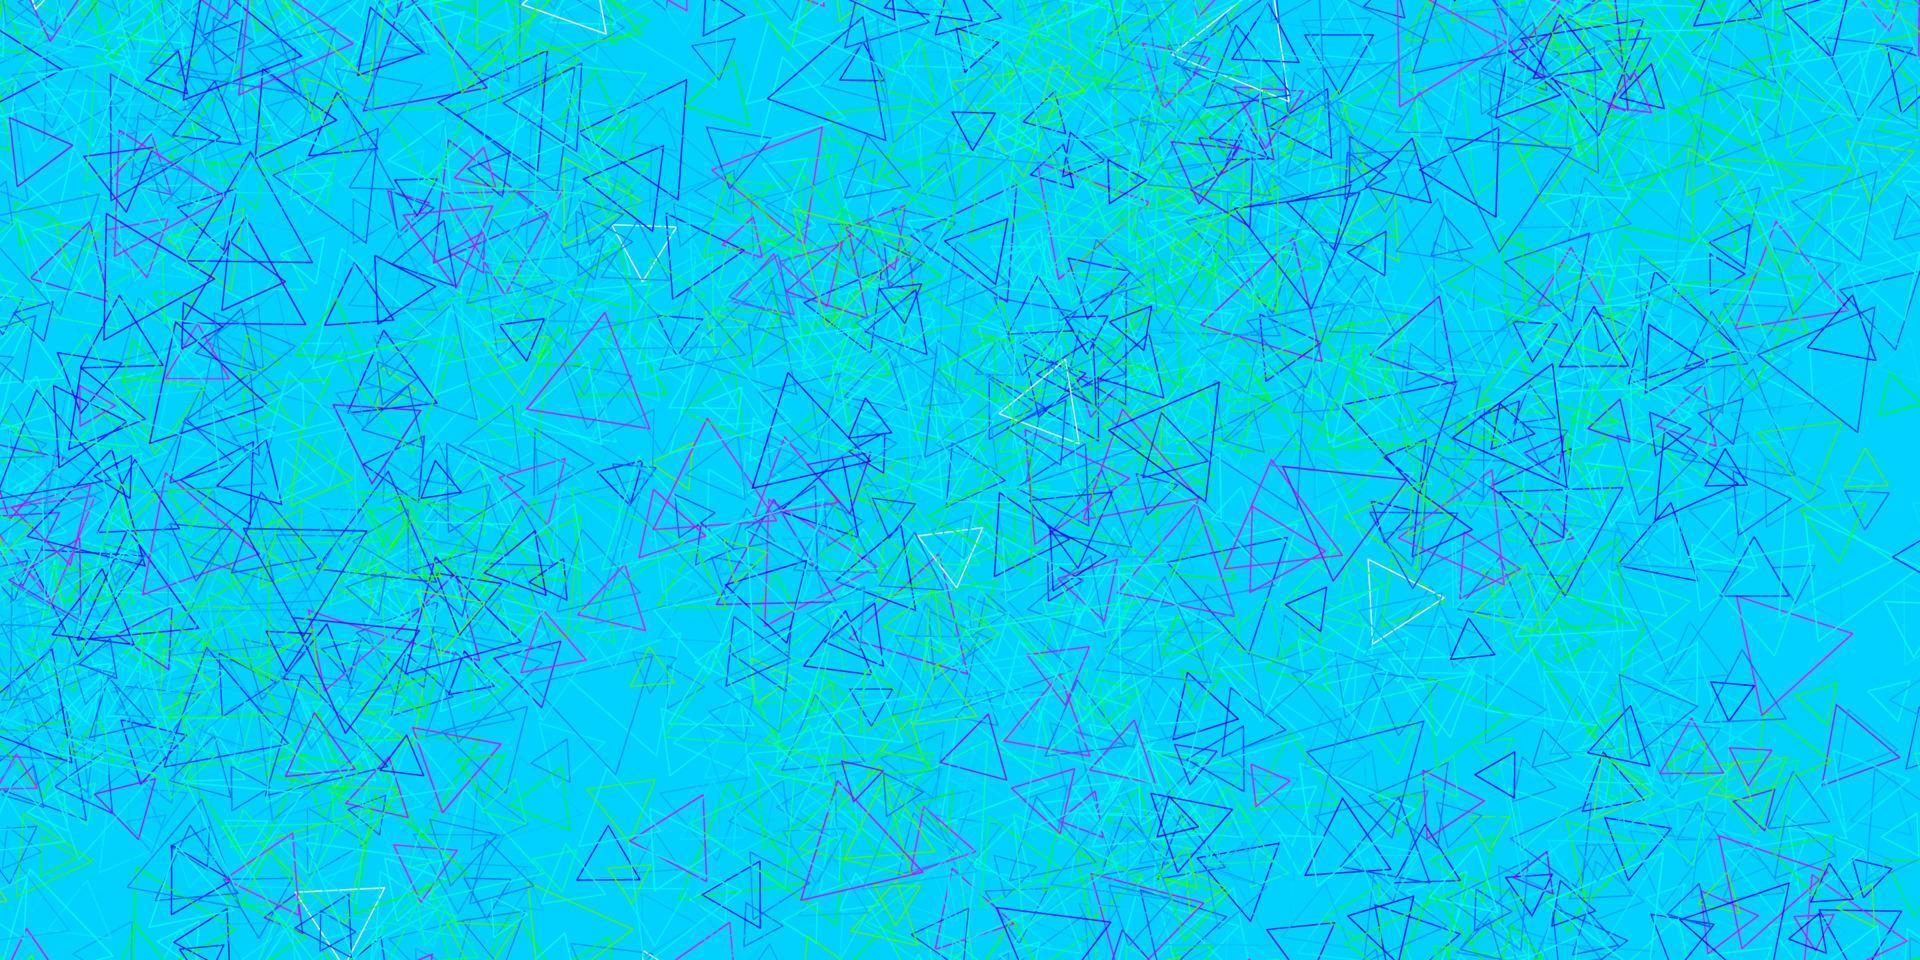 mörkblå, grön vektorbakgrund med trianglar, linjer. vektor